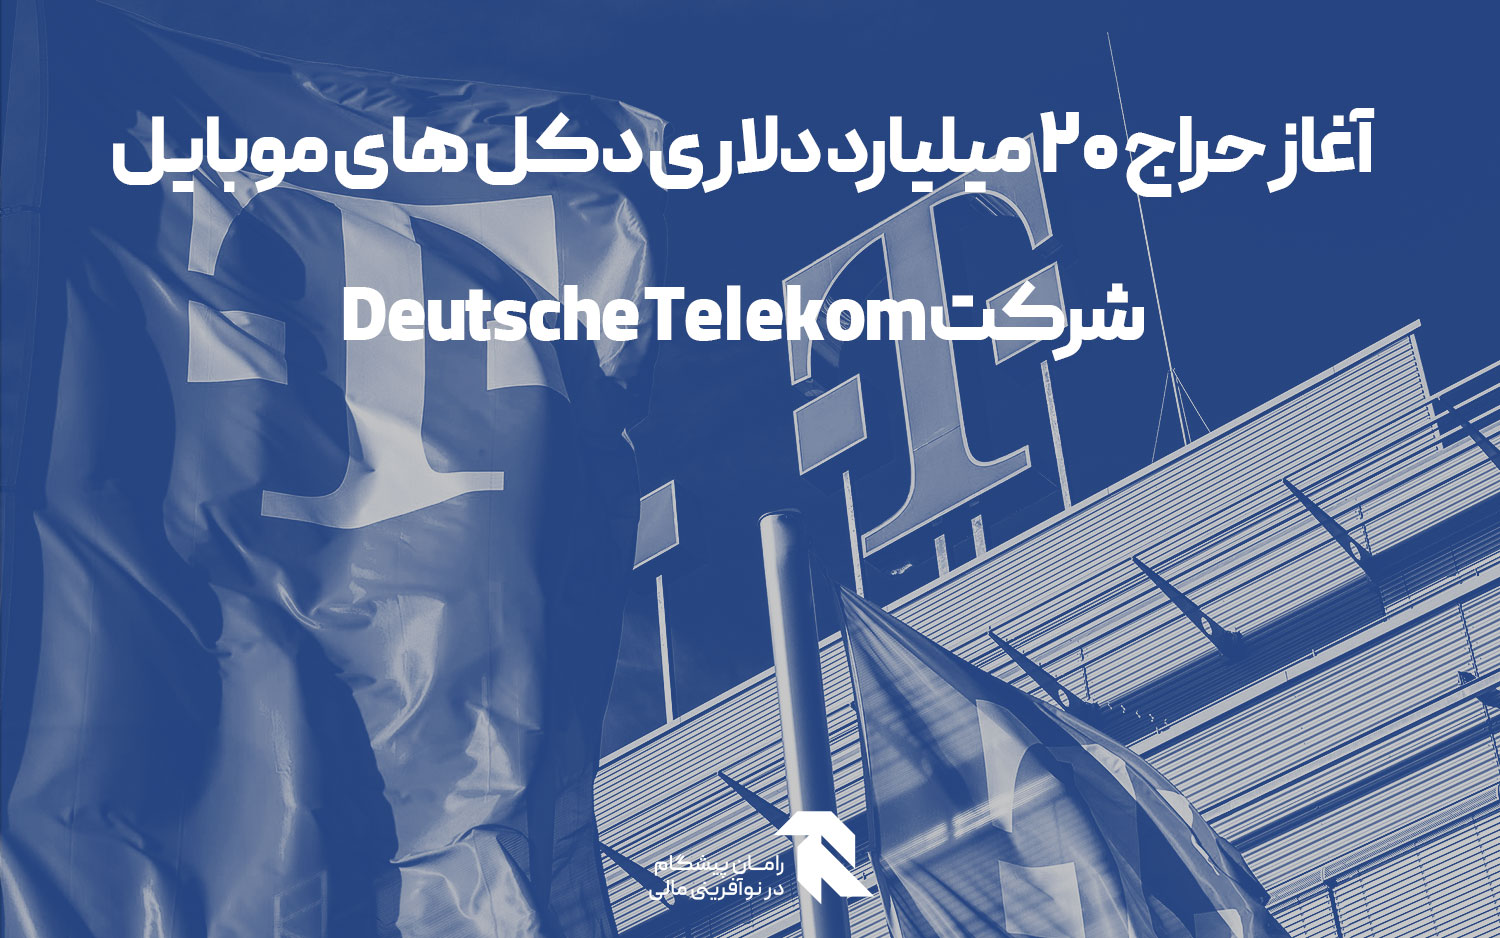 آغاز حراج 20 میلیارد دلاری دکل های موبایل شرکت Deutsche Telekom